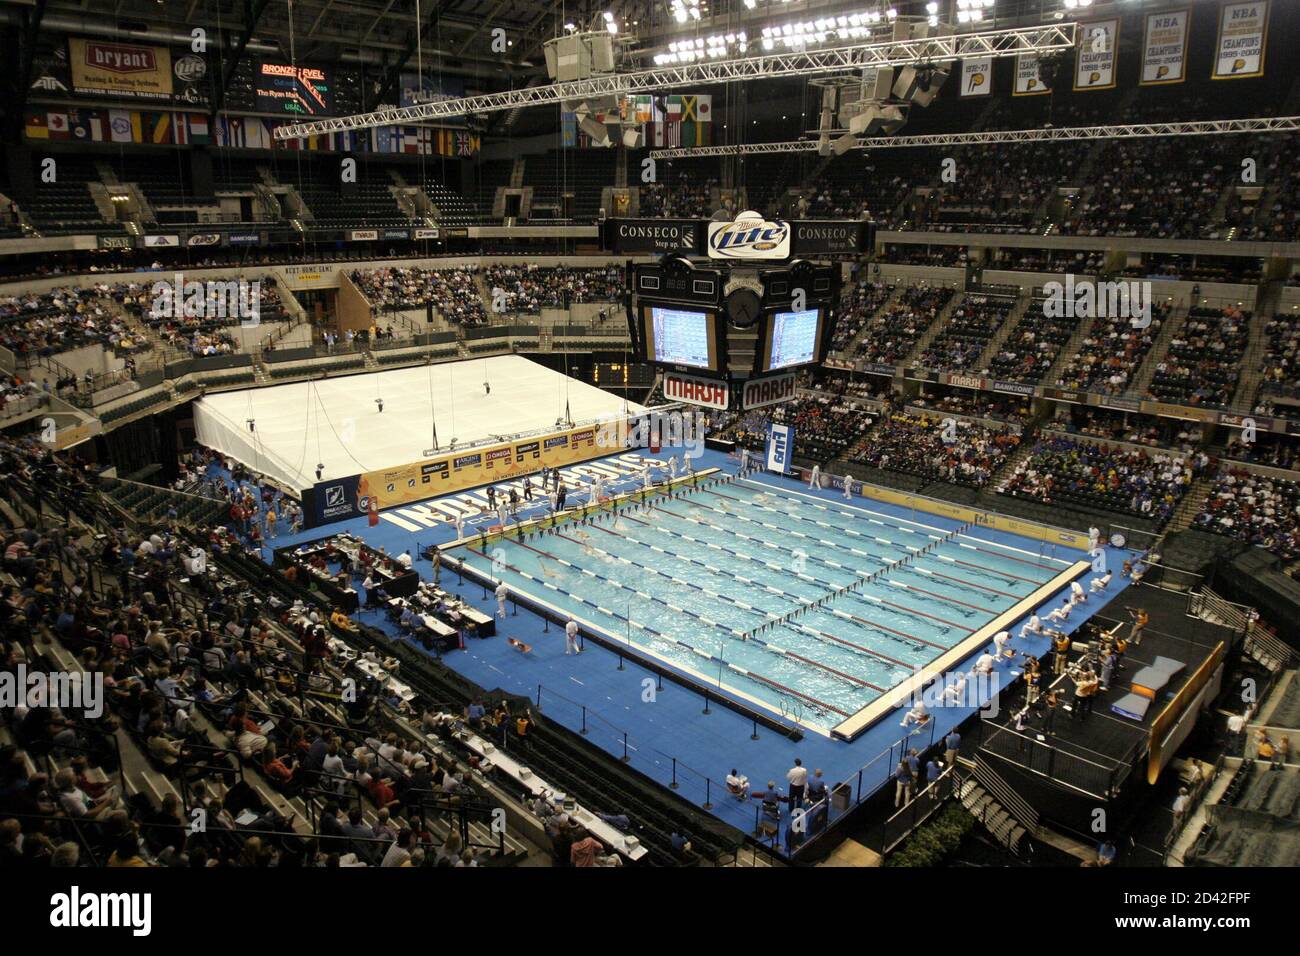 El Conseco Fieldhouse en Indianápolis, hogar de los Indiana Pacers de la NBA,  se ve el 7 de octubre de 2004 con piscinas construidas para el Campeonato  Mundial de Natación. La piscina